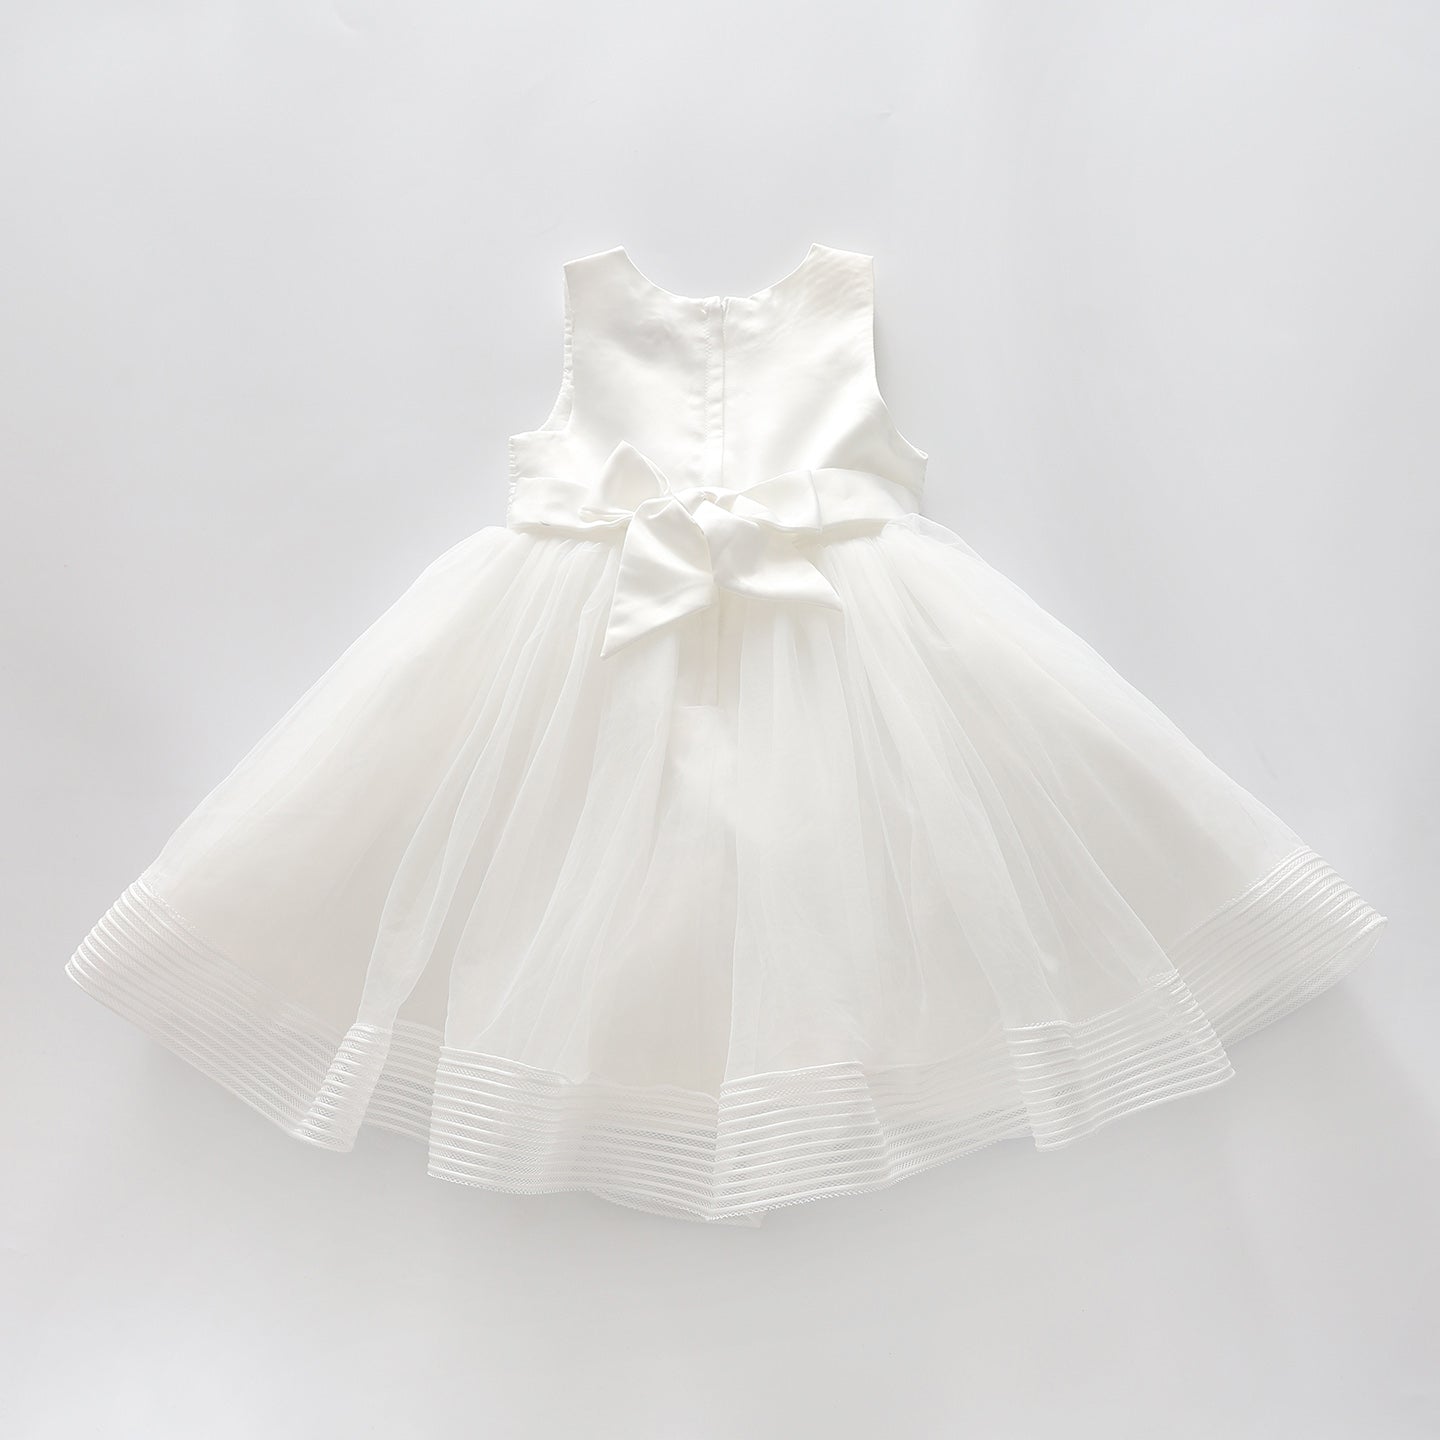 Girls' Elegant Tulle Formalwear Dress - White